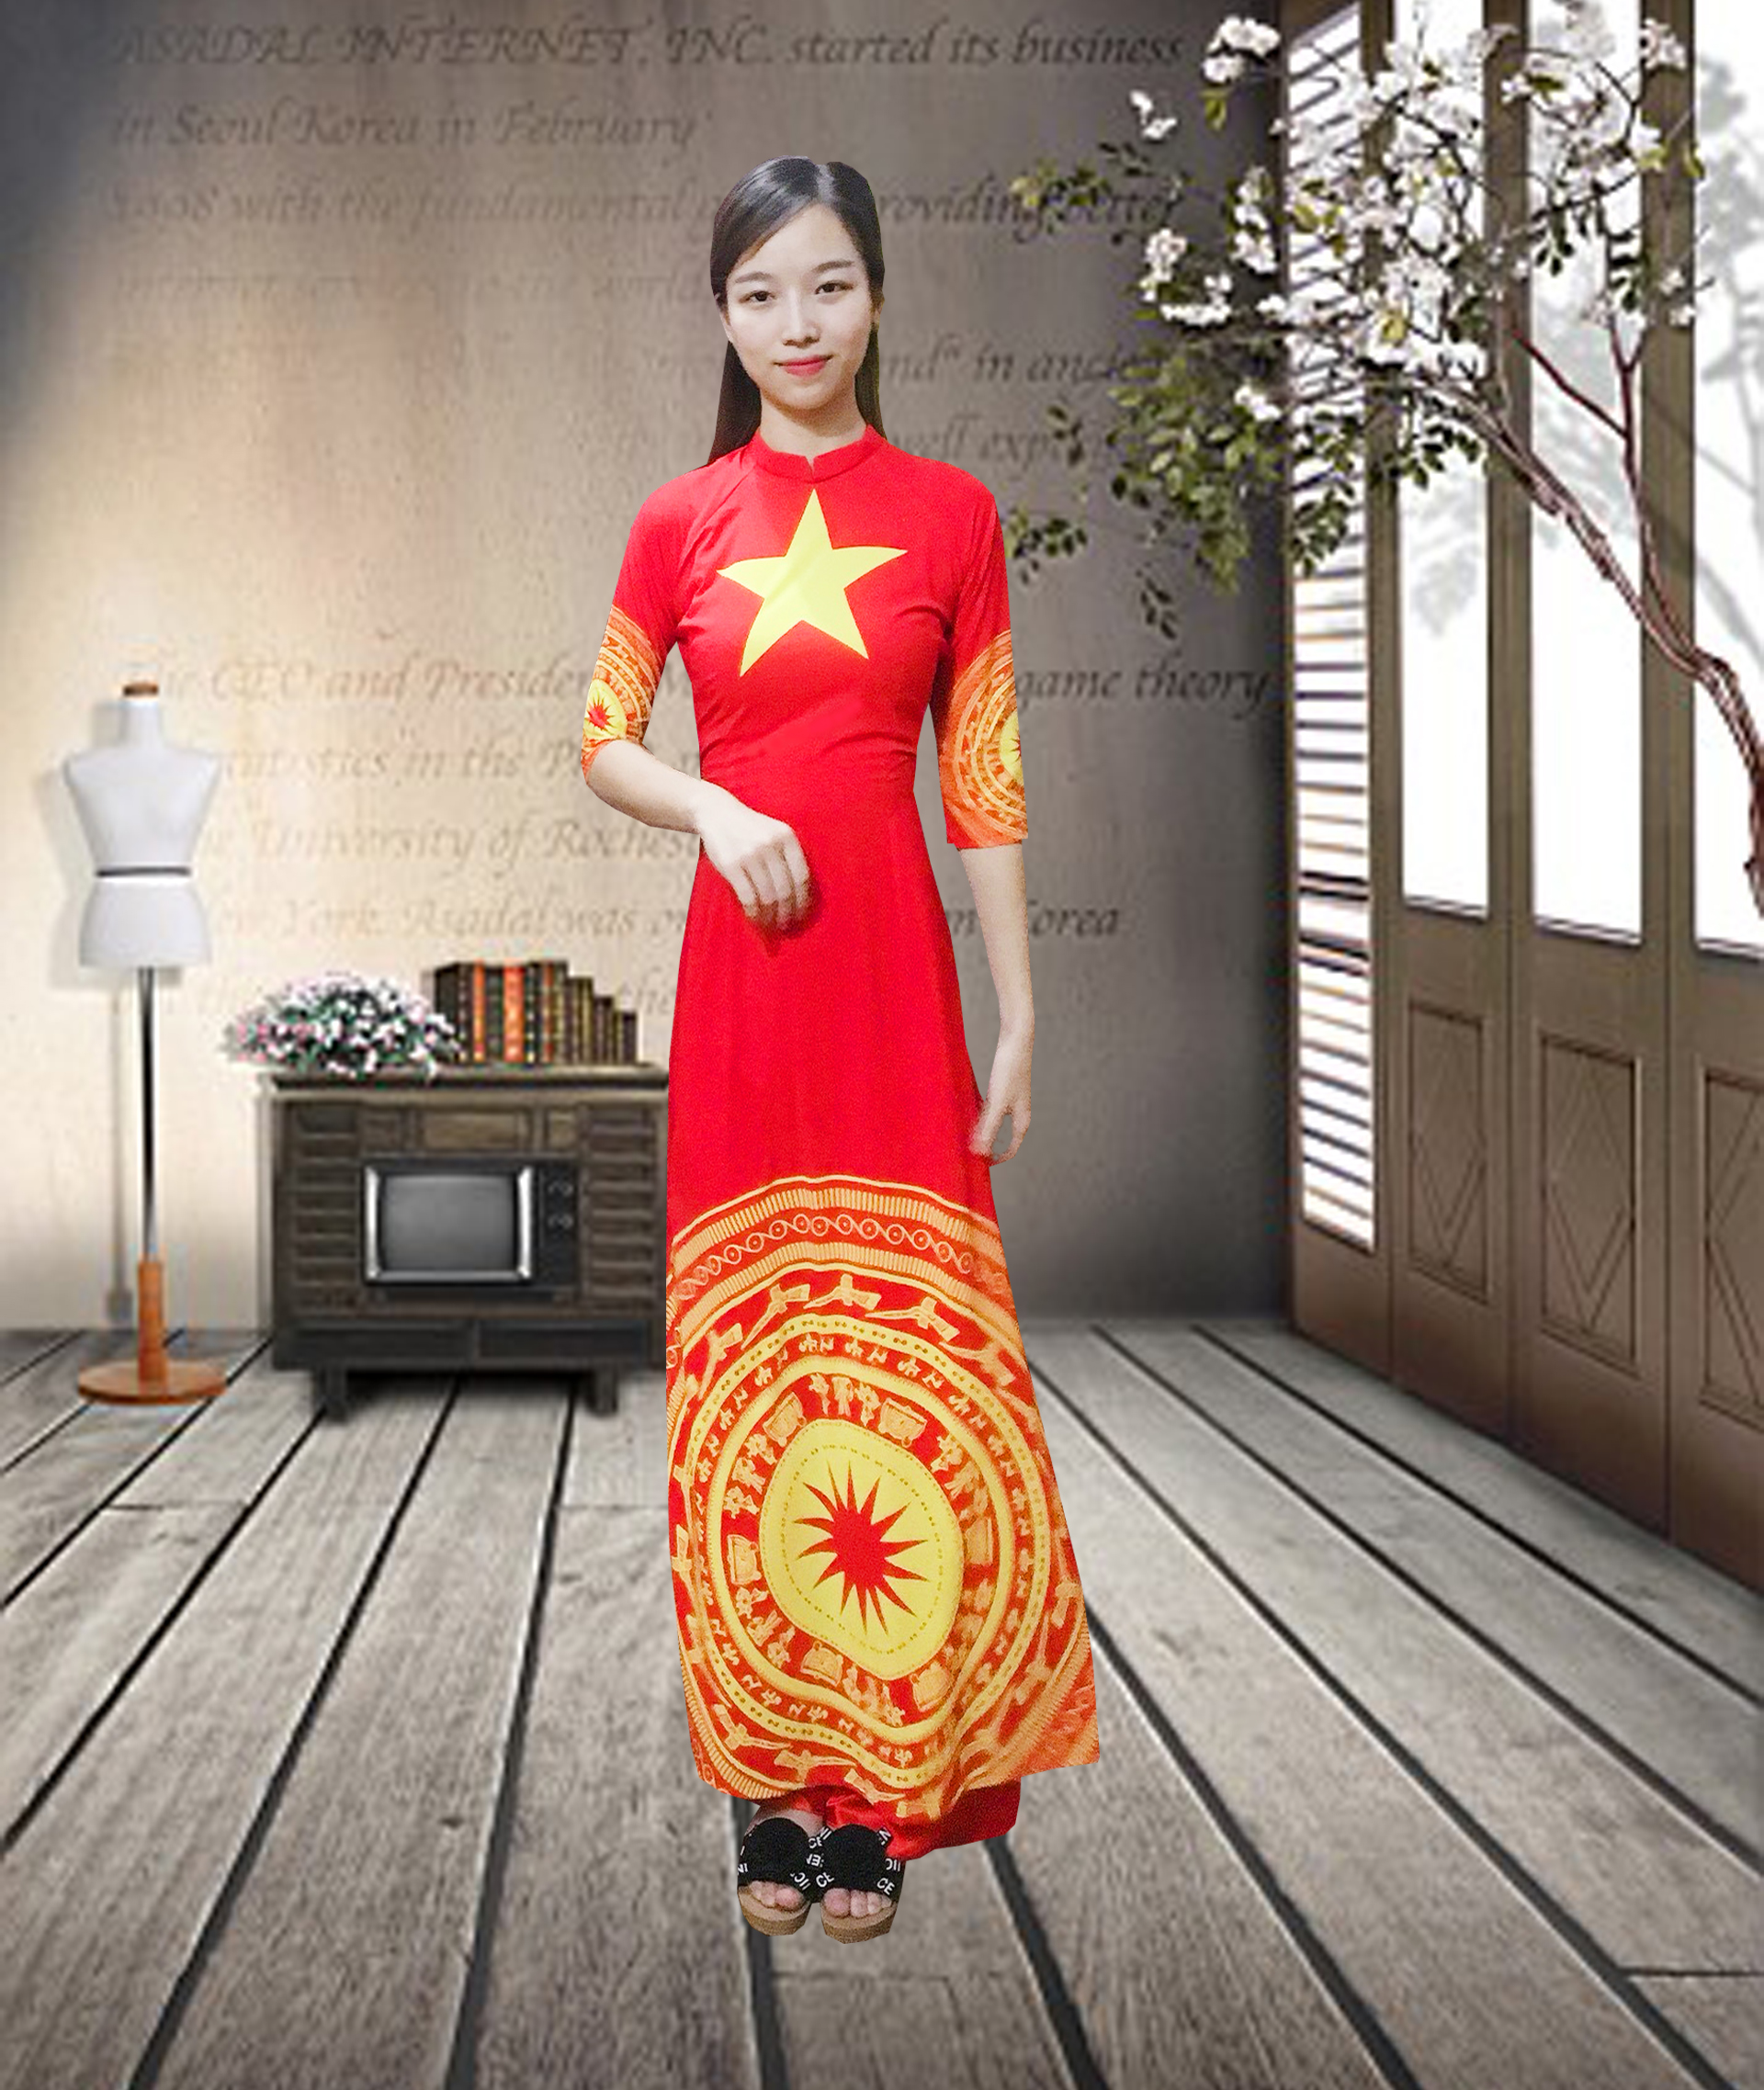 Áo Dài Cờ Đỏ Sao Vàng giá rẻ là lựa chọn tuyệt vời cho những ai yêu thích trang phục truyền thống. Tại shop của chúng tôi, chúng tôi cung cấp các mẫu áo dài cờ đỏ sao vàng với giá cả phải chăng nhất để bạn có thể thỏa sức khám phá vẻ đẹp truyền thống của Việt Nam.